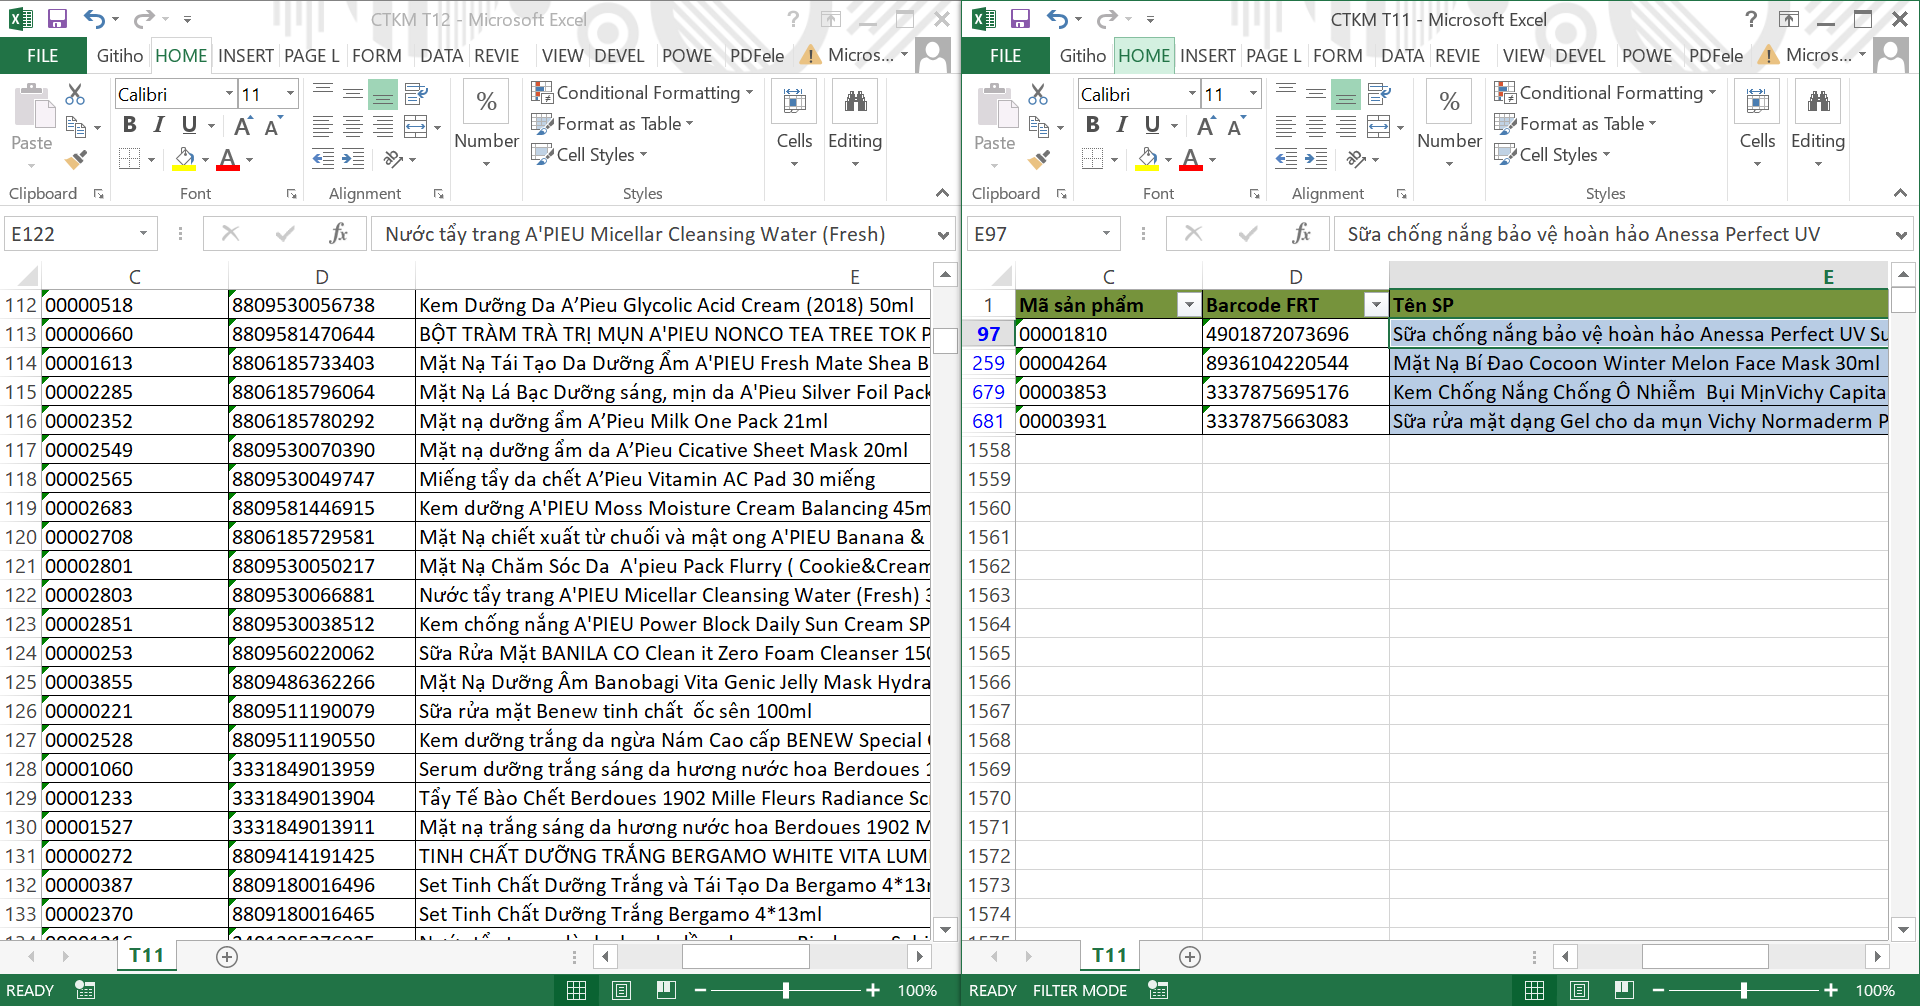 Dùng Taskbar để chia đôi màn hình 2 file Excel 2